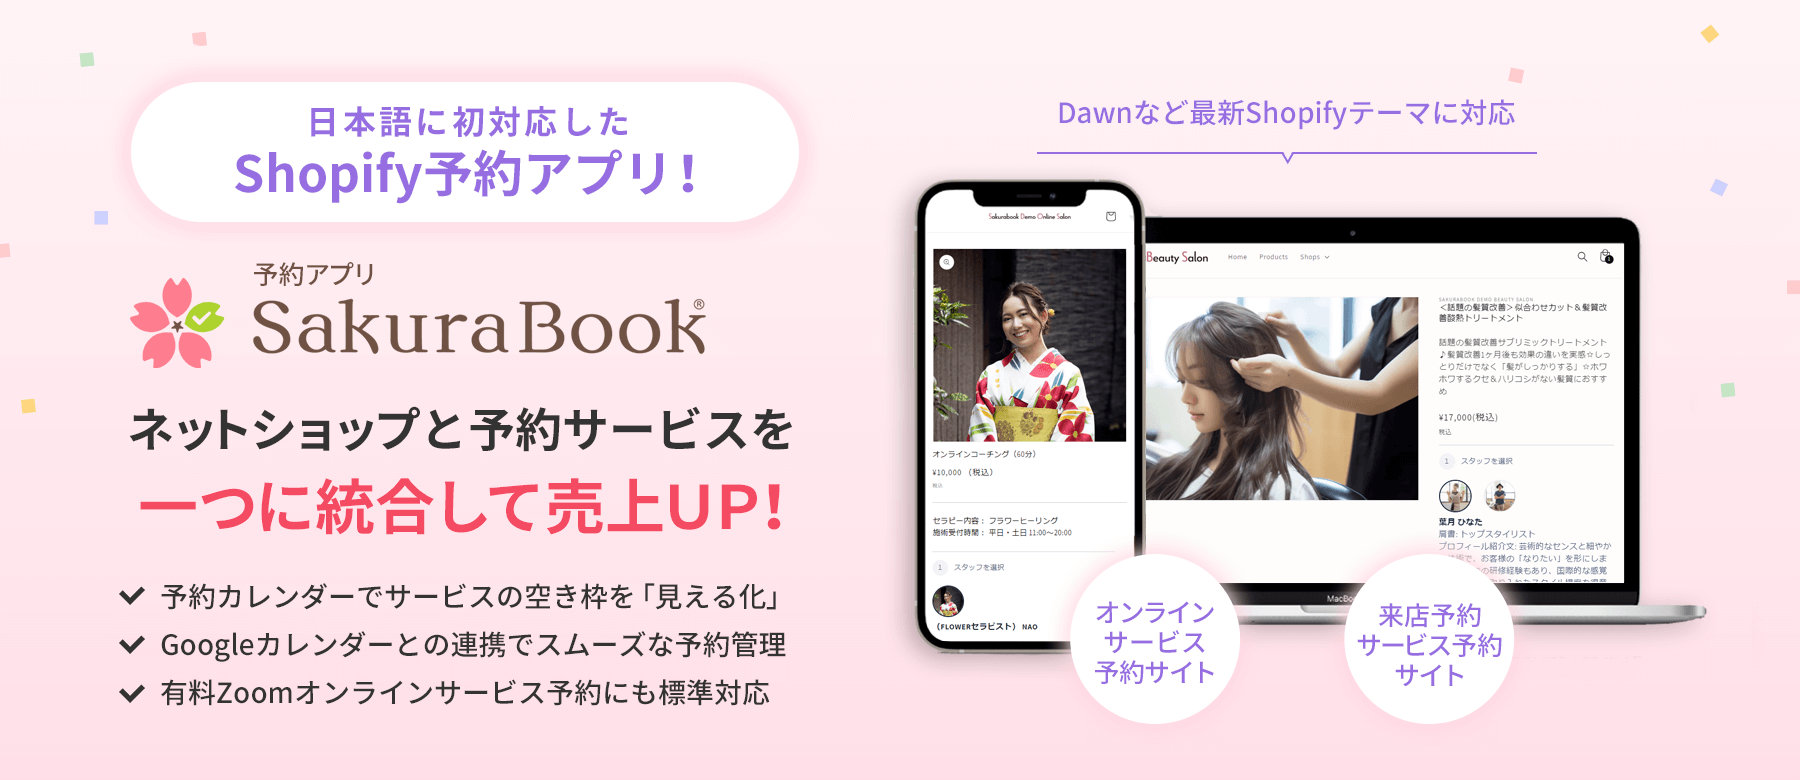 Shopifyで初めて日本語対応した公式予約アプリ「Sakurabook」